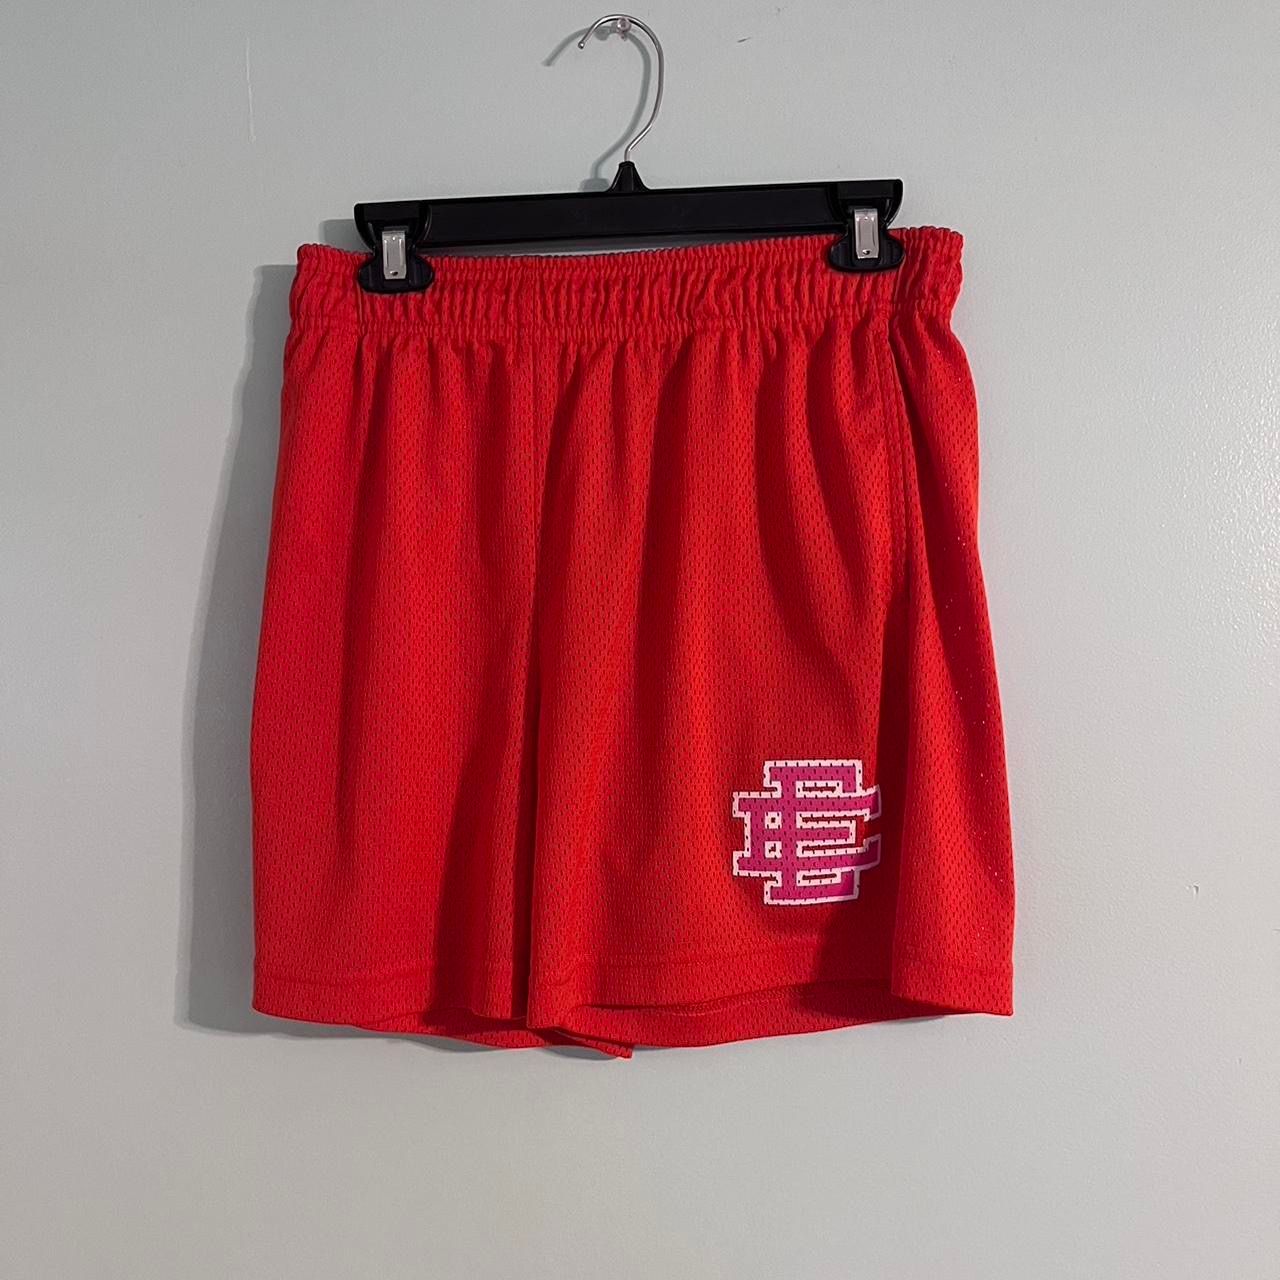 Eric Emanuel Eric Emanuel EE mesh shorts “Orange/Red” size L | Grailed